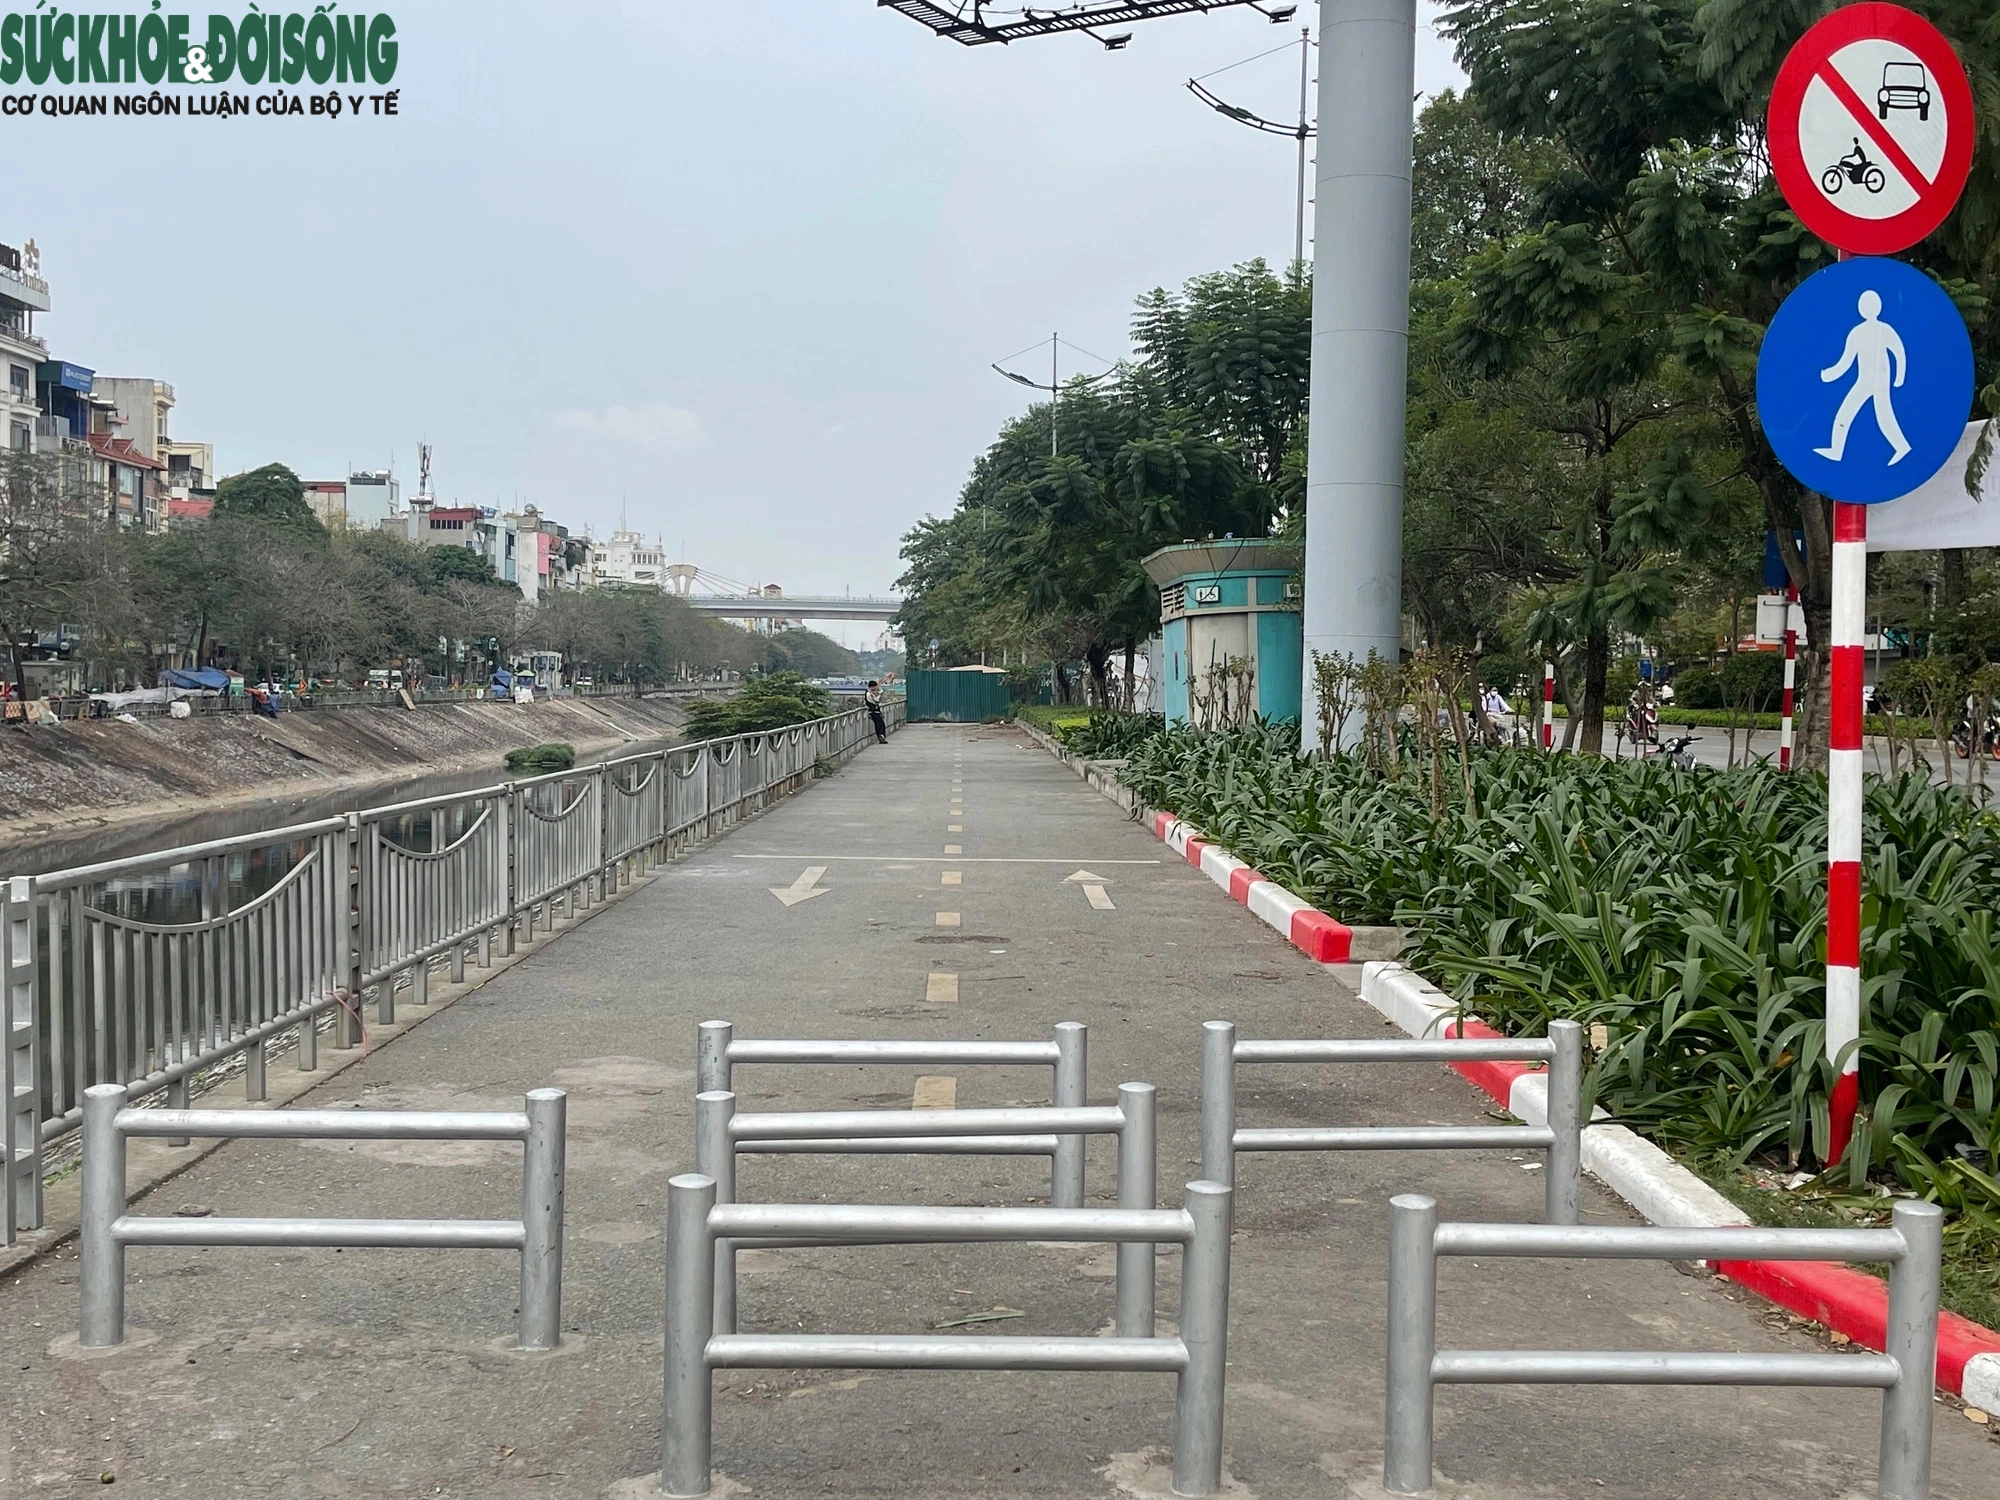 Hà Nội: Vắng lặng tại đường dành riêng cho xe đạp sau 1 tháng thông tuyến- Ảnh 4.